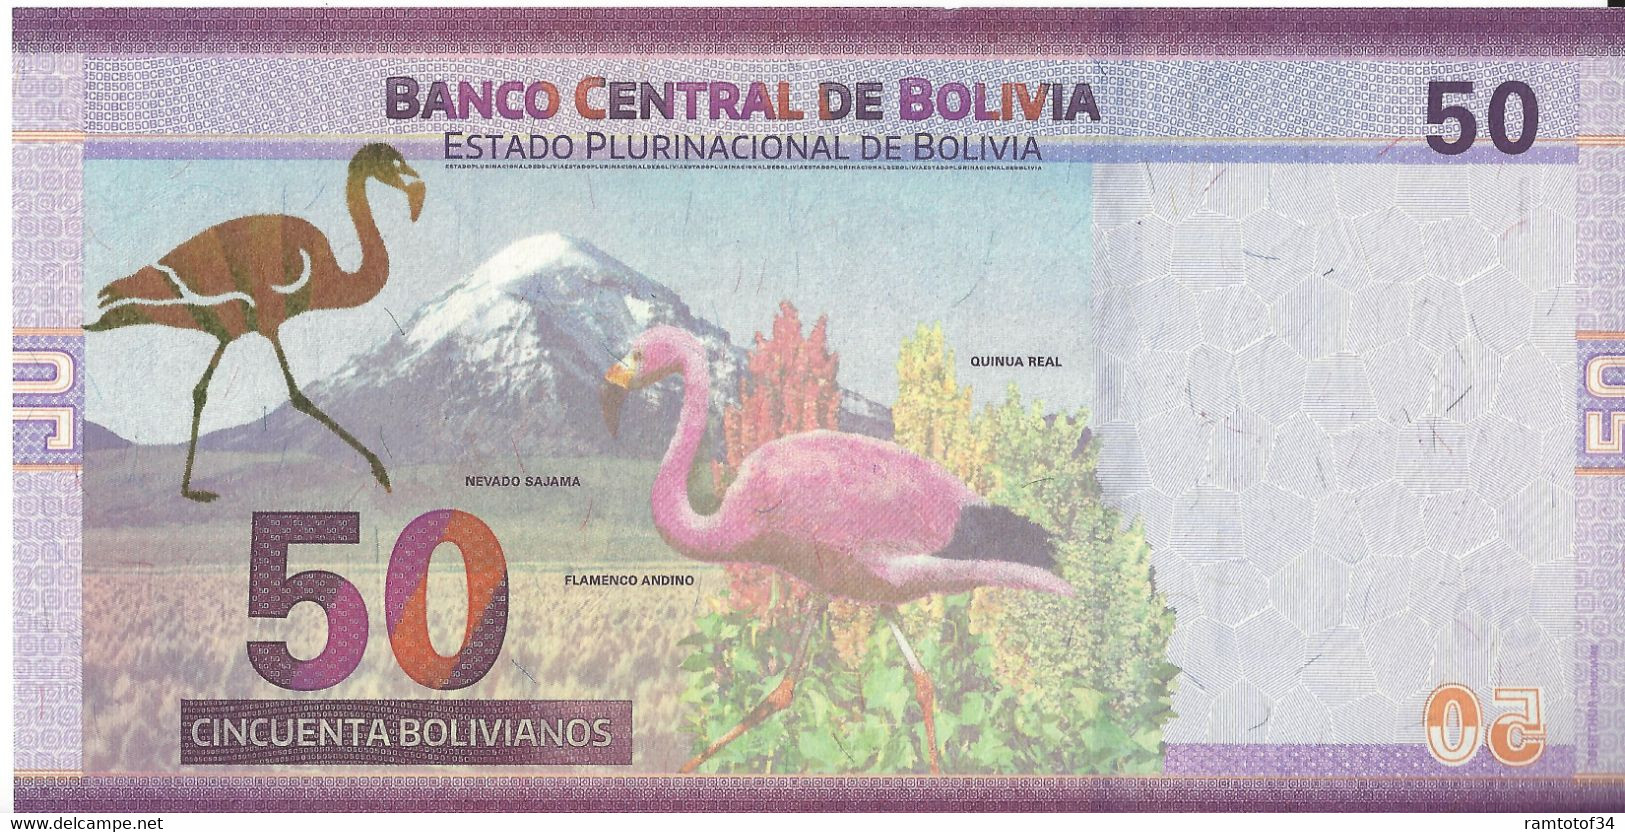 BOLIVIE - 50 Bolivianos 2018 UNC - Bolivie